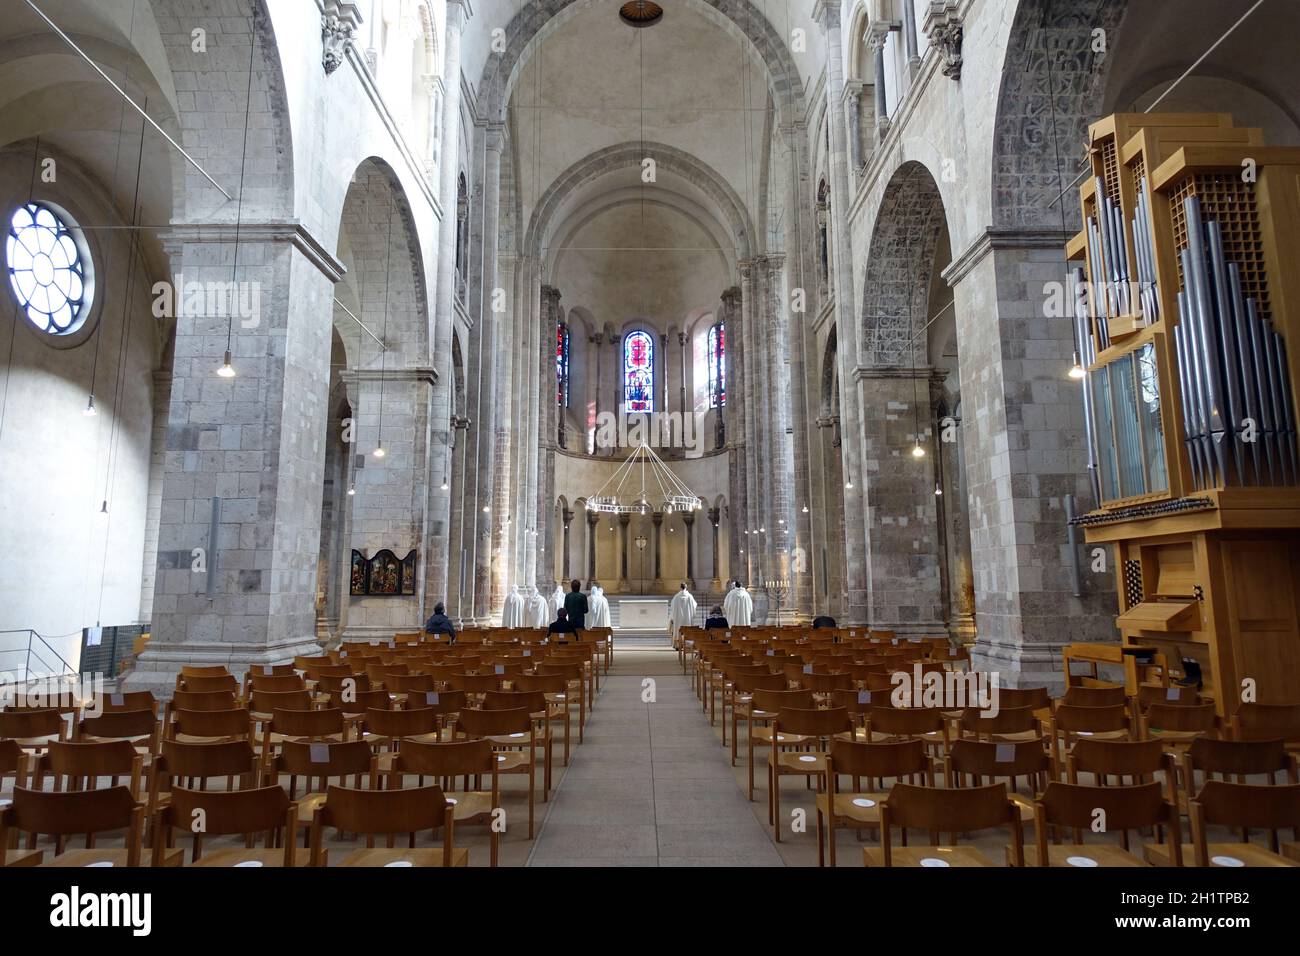 Gottesdienst in Gross St. Martin, romanische Basilika aus dem 12. Jahrhundert, Köln,  Nordrhein-Westfalen, Deutschland Stock Photo